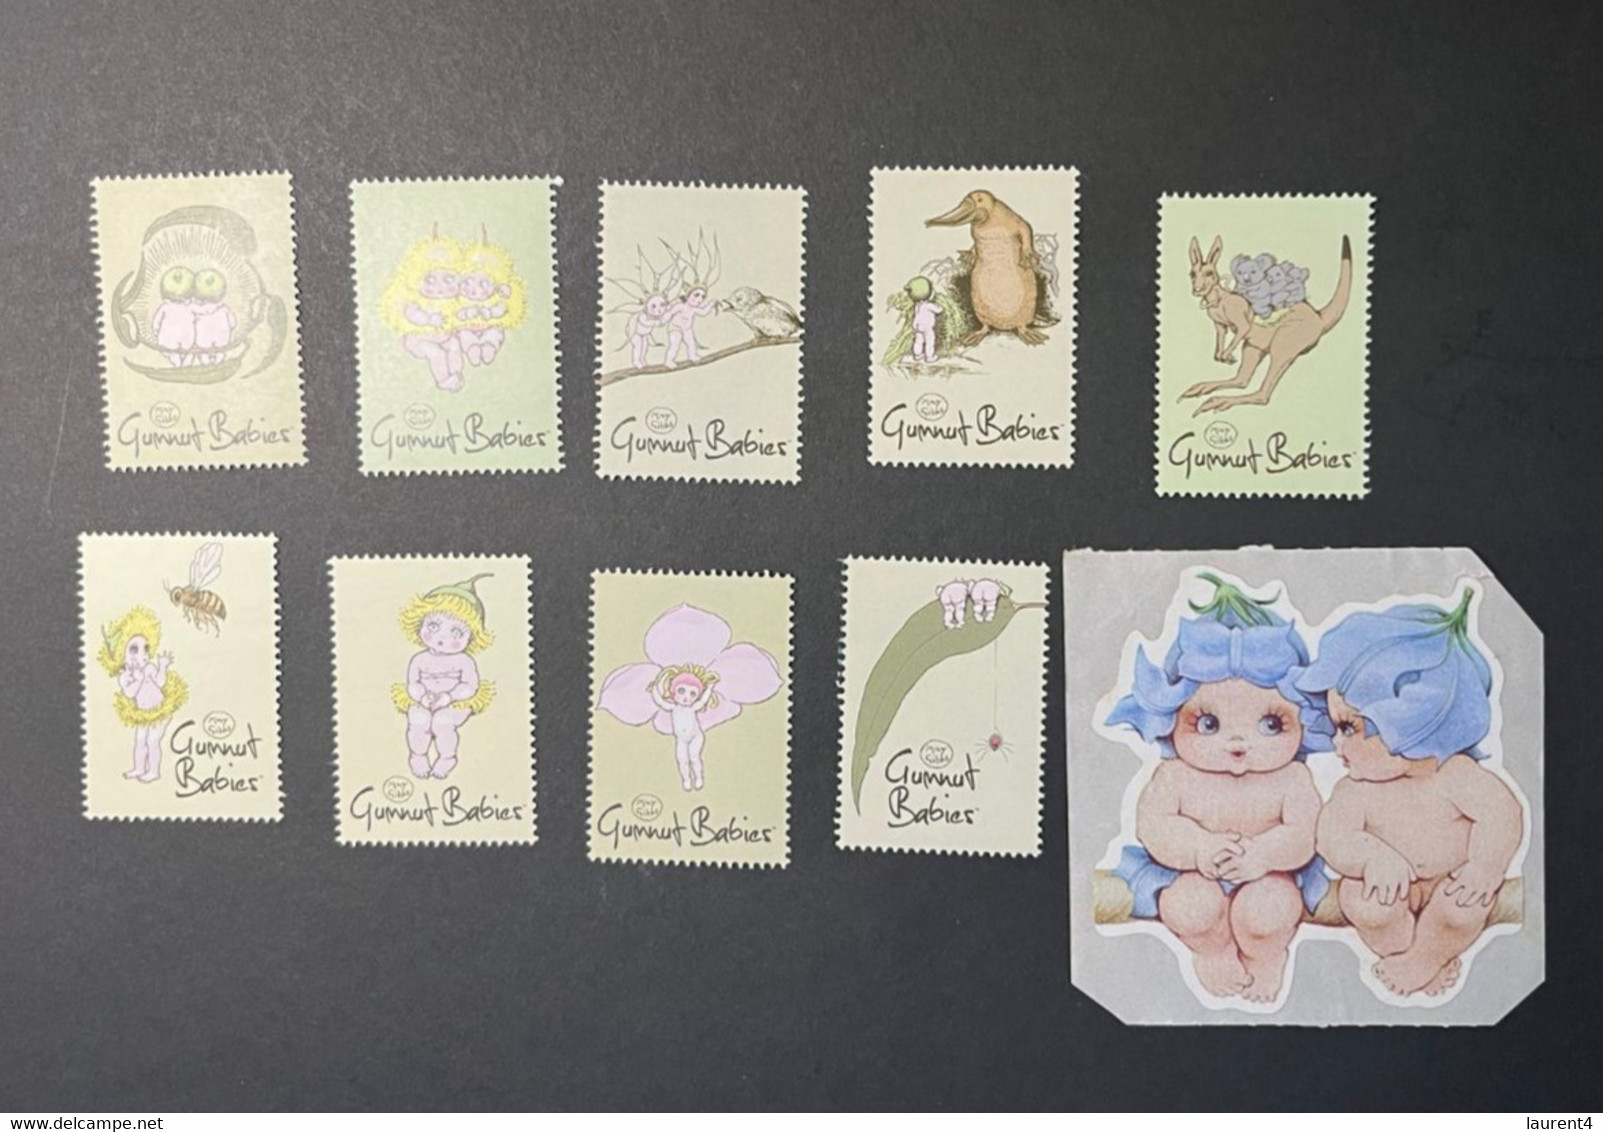 (STAMPS 7-1-2023) Australia - May Gibbs - Gumnut Babies Cinderella (TAG) 9 (mint) As Seen On Scan + 1 Sticker - Werbemarken, Vignetten